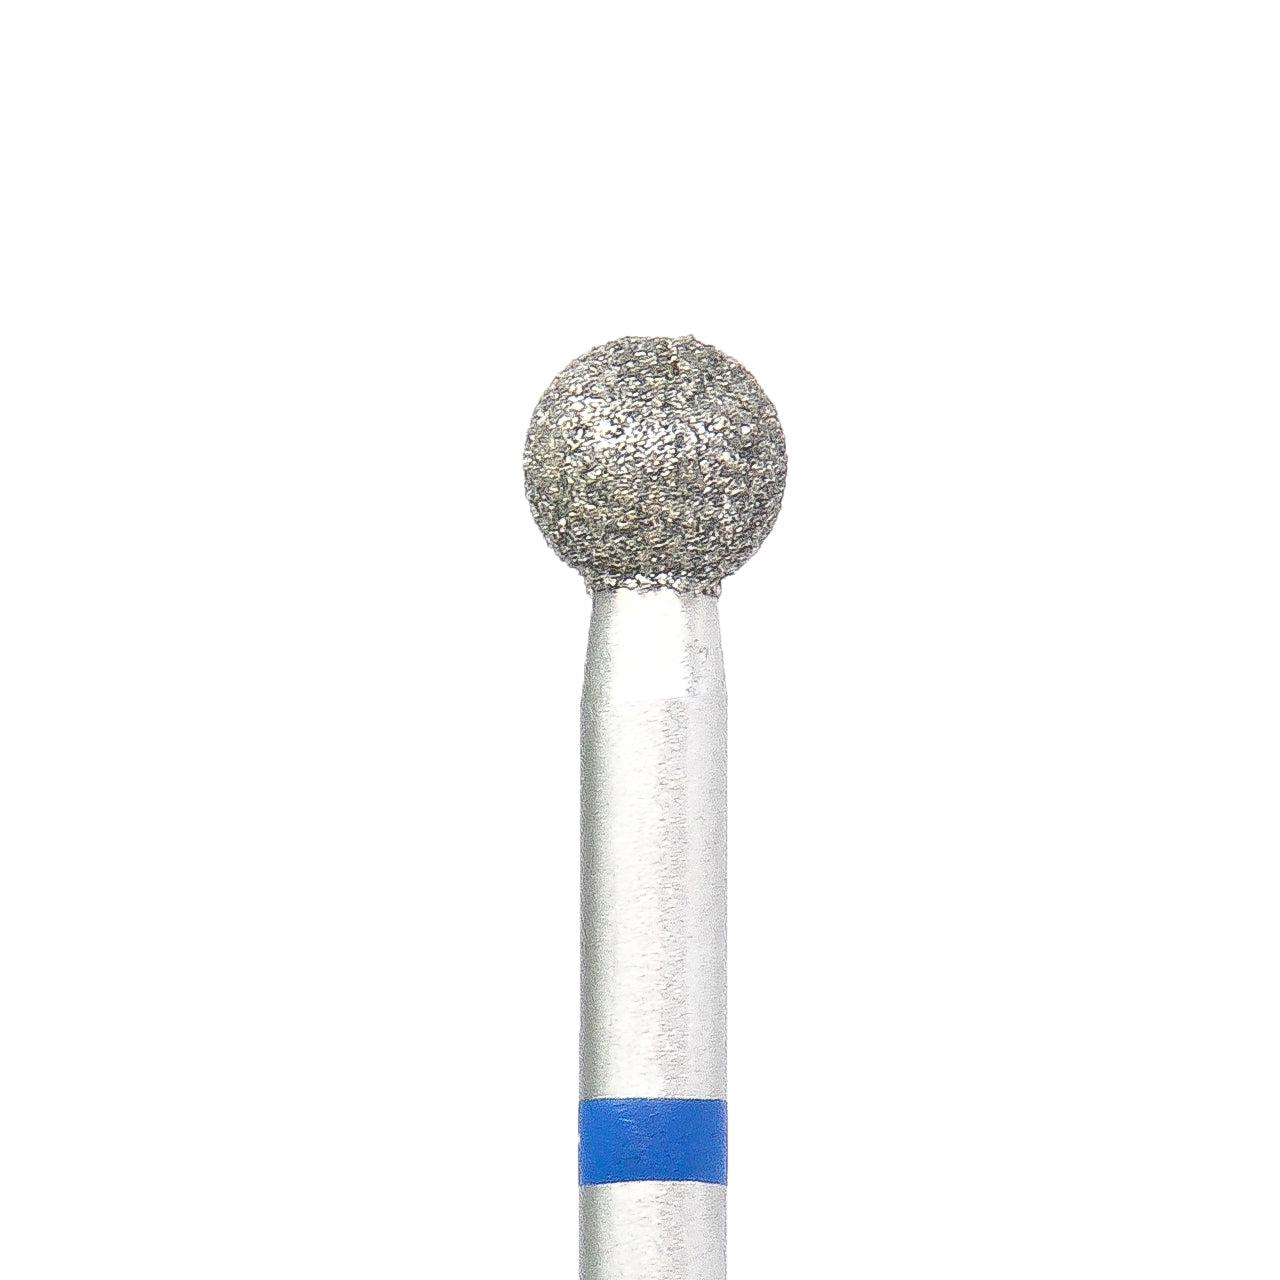 KMIZ Diamond Ball E-File Nail Bit, 3.5mm, Blue